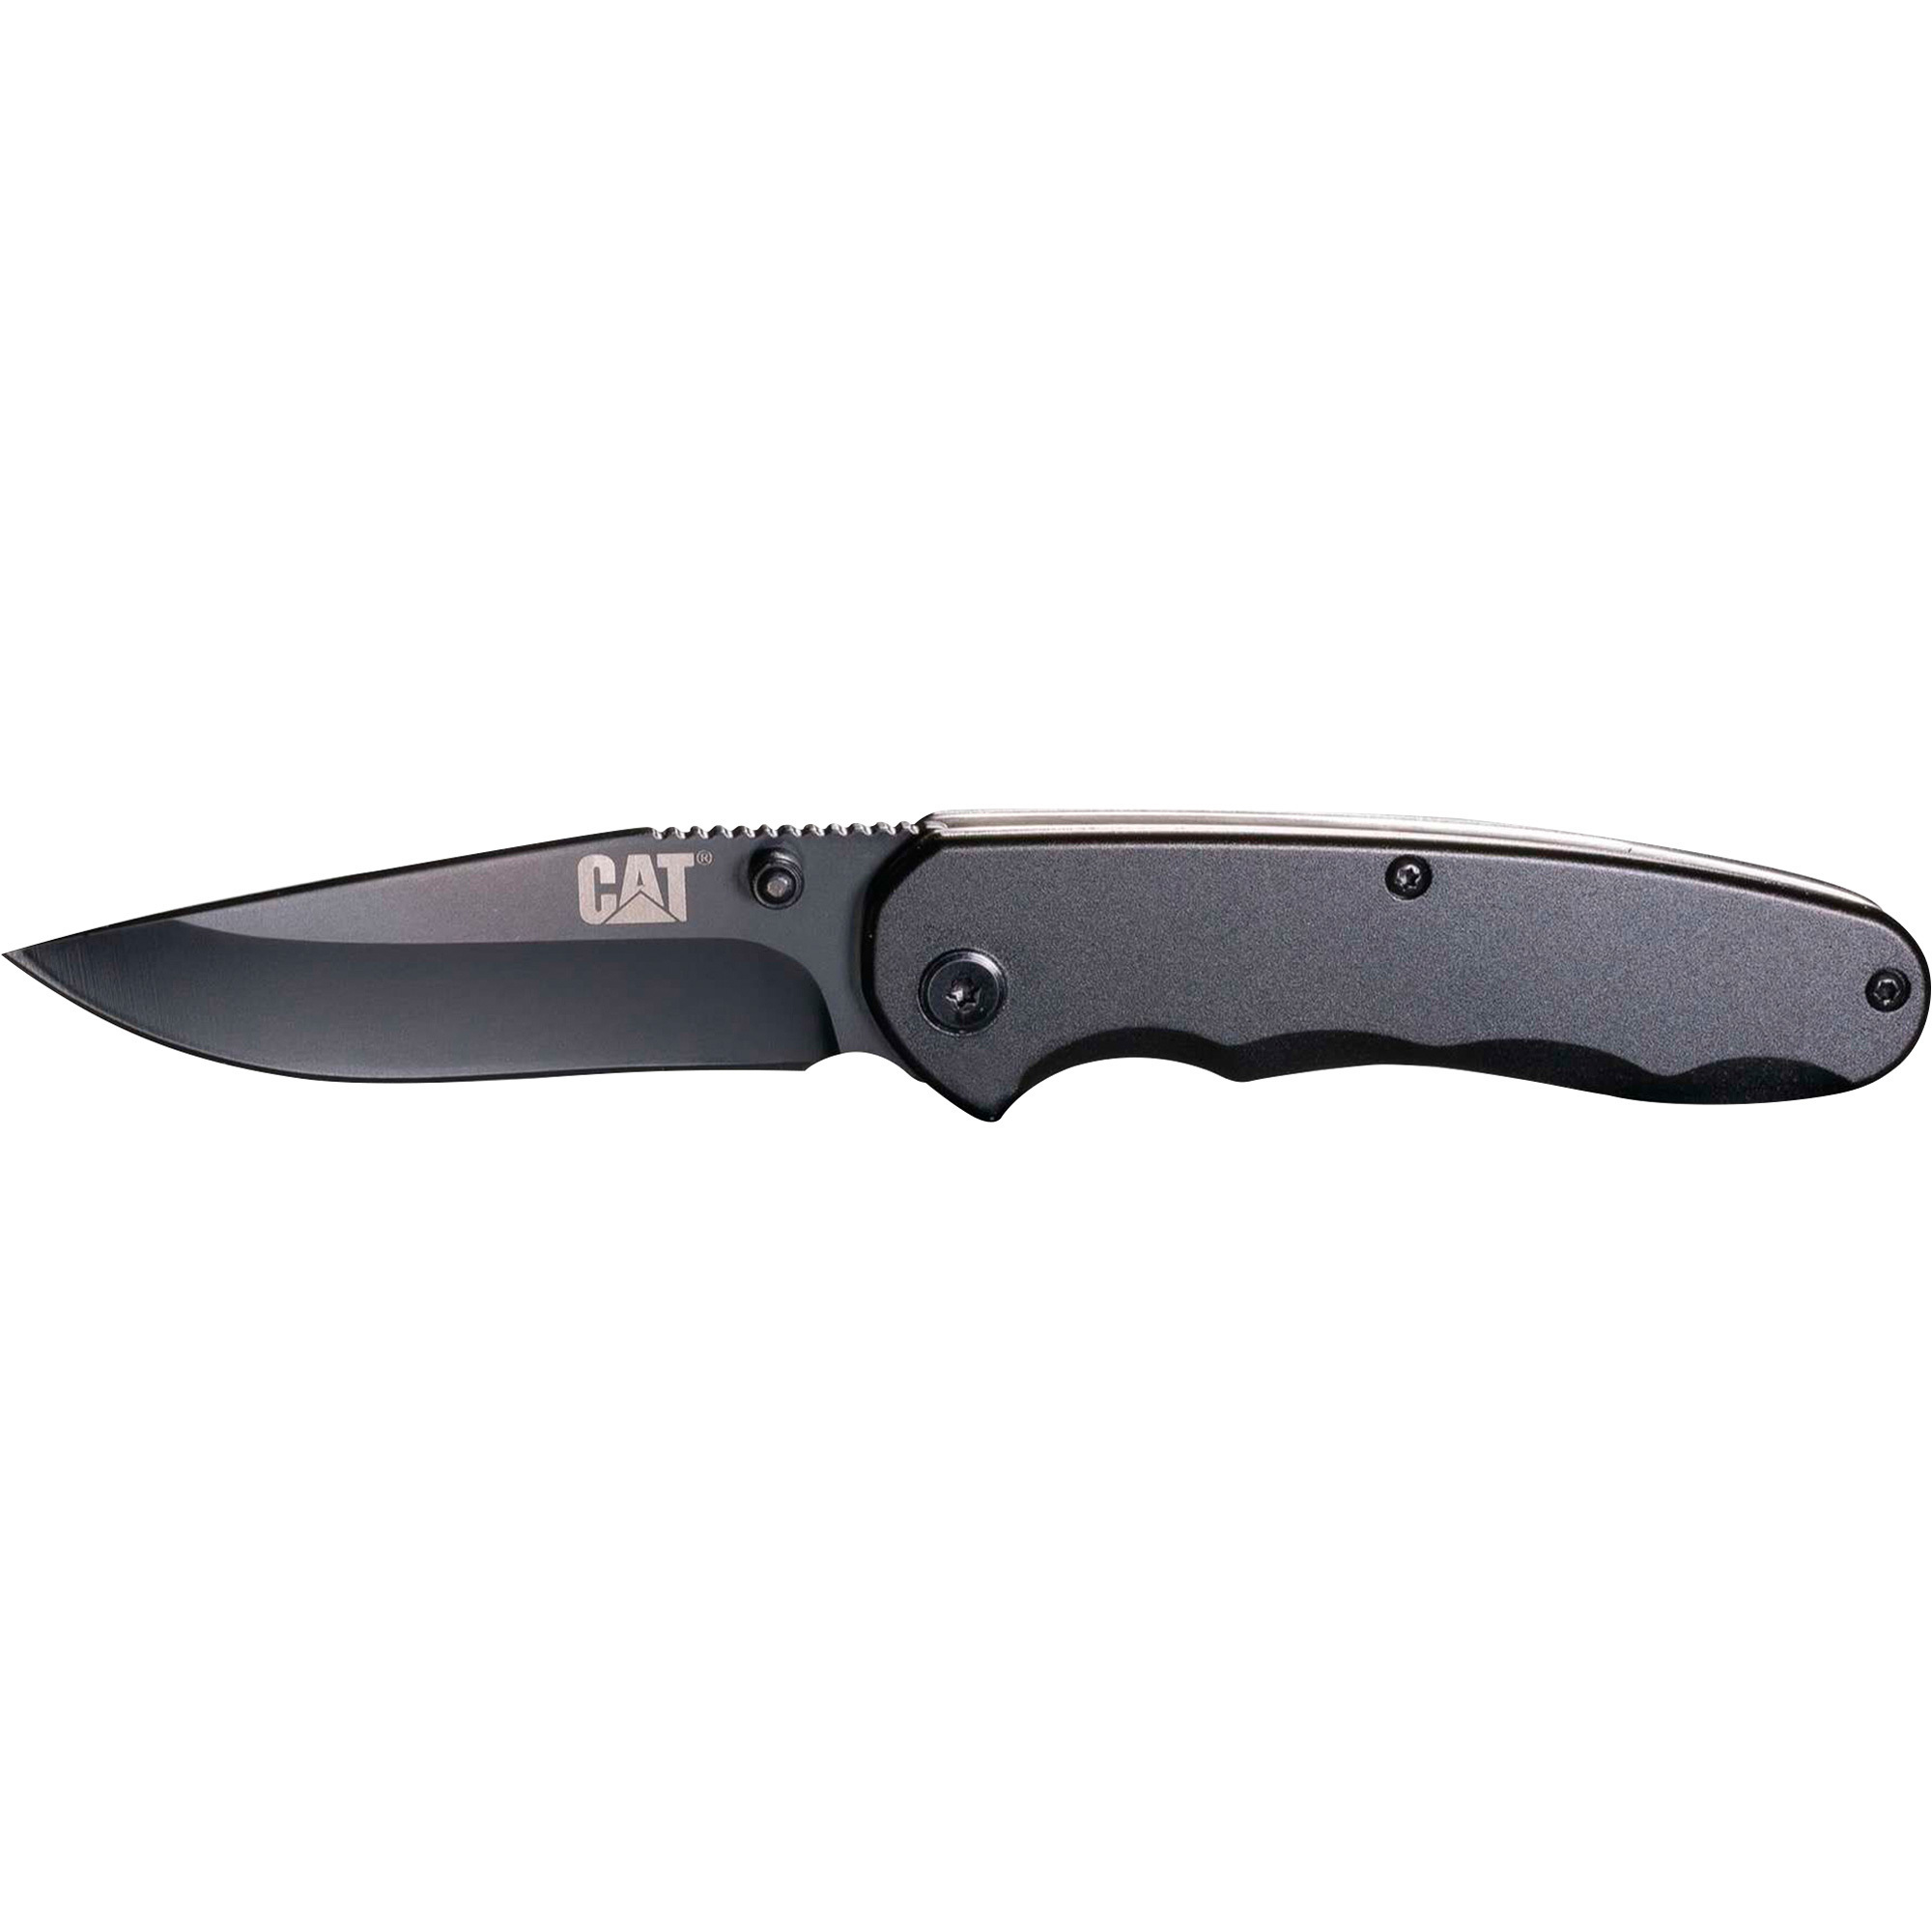 Cat 7Inch Drop Point Folding Knife, Model 980016